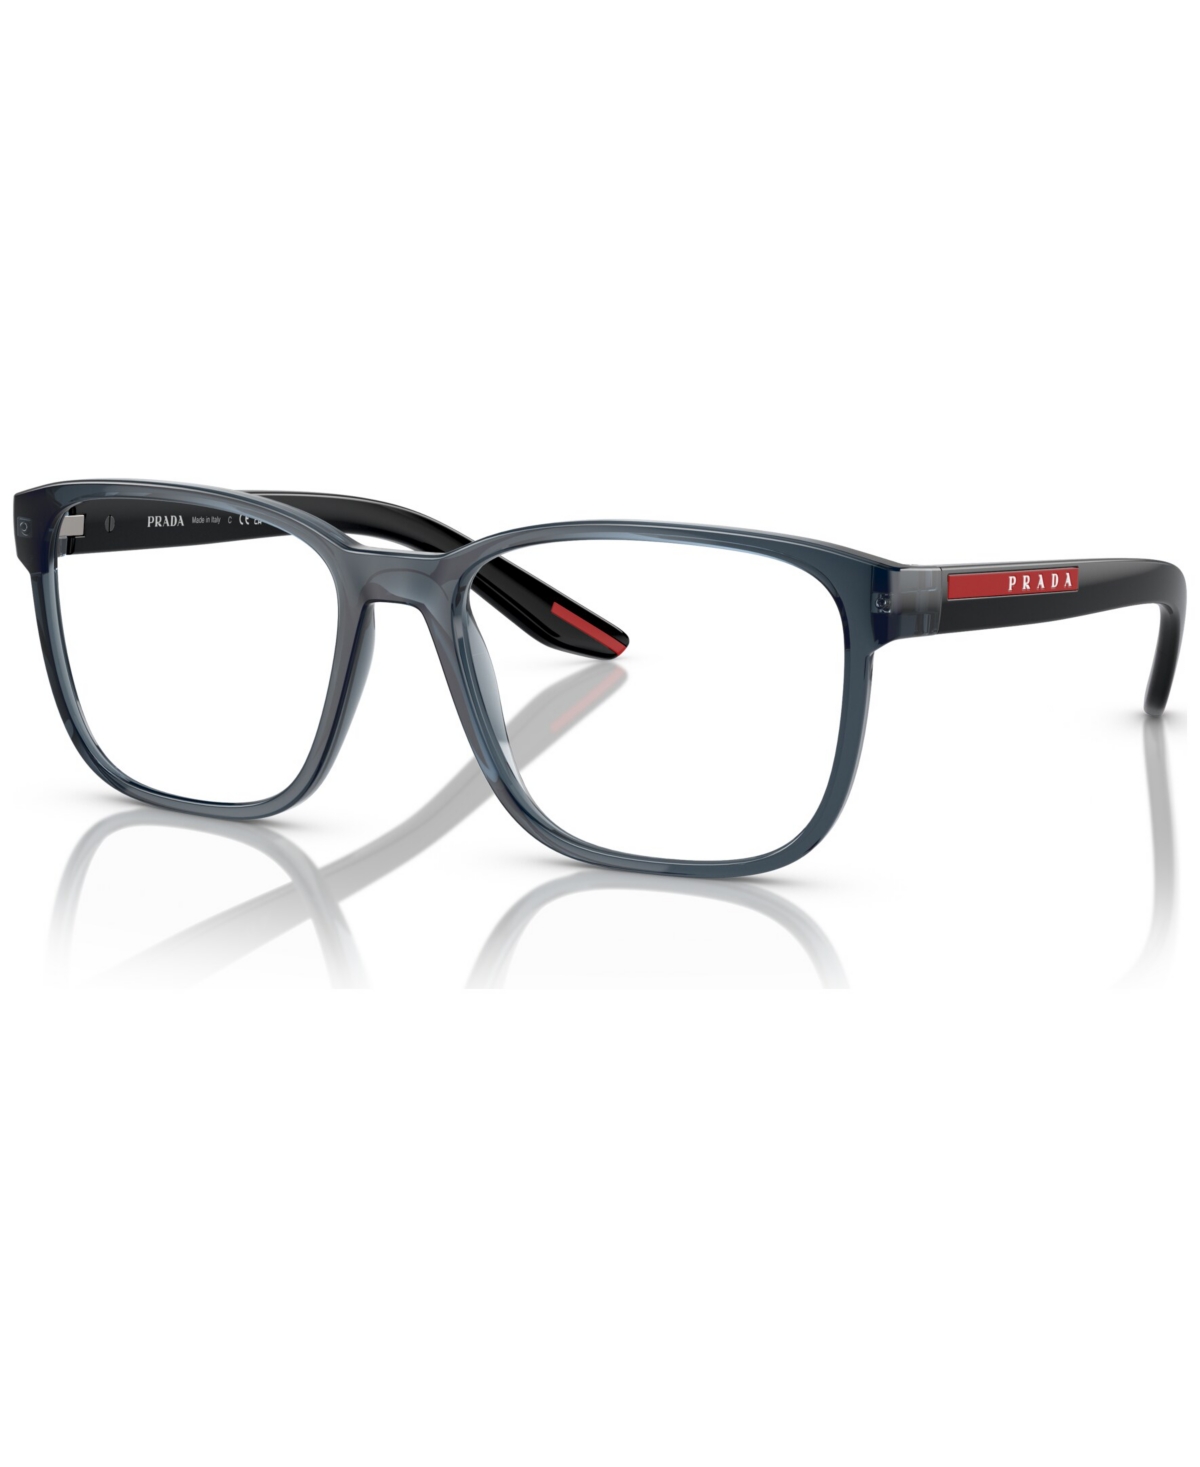 Men's Eyeglasses, Ps 06PV 55 - Black Rubber